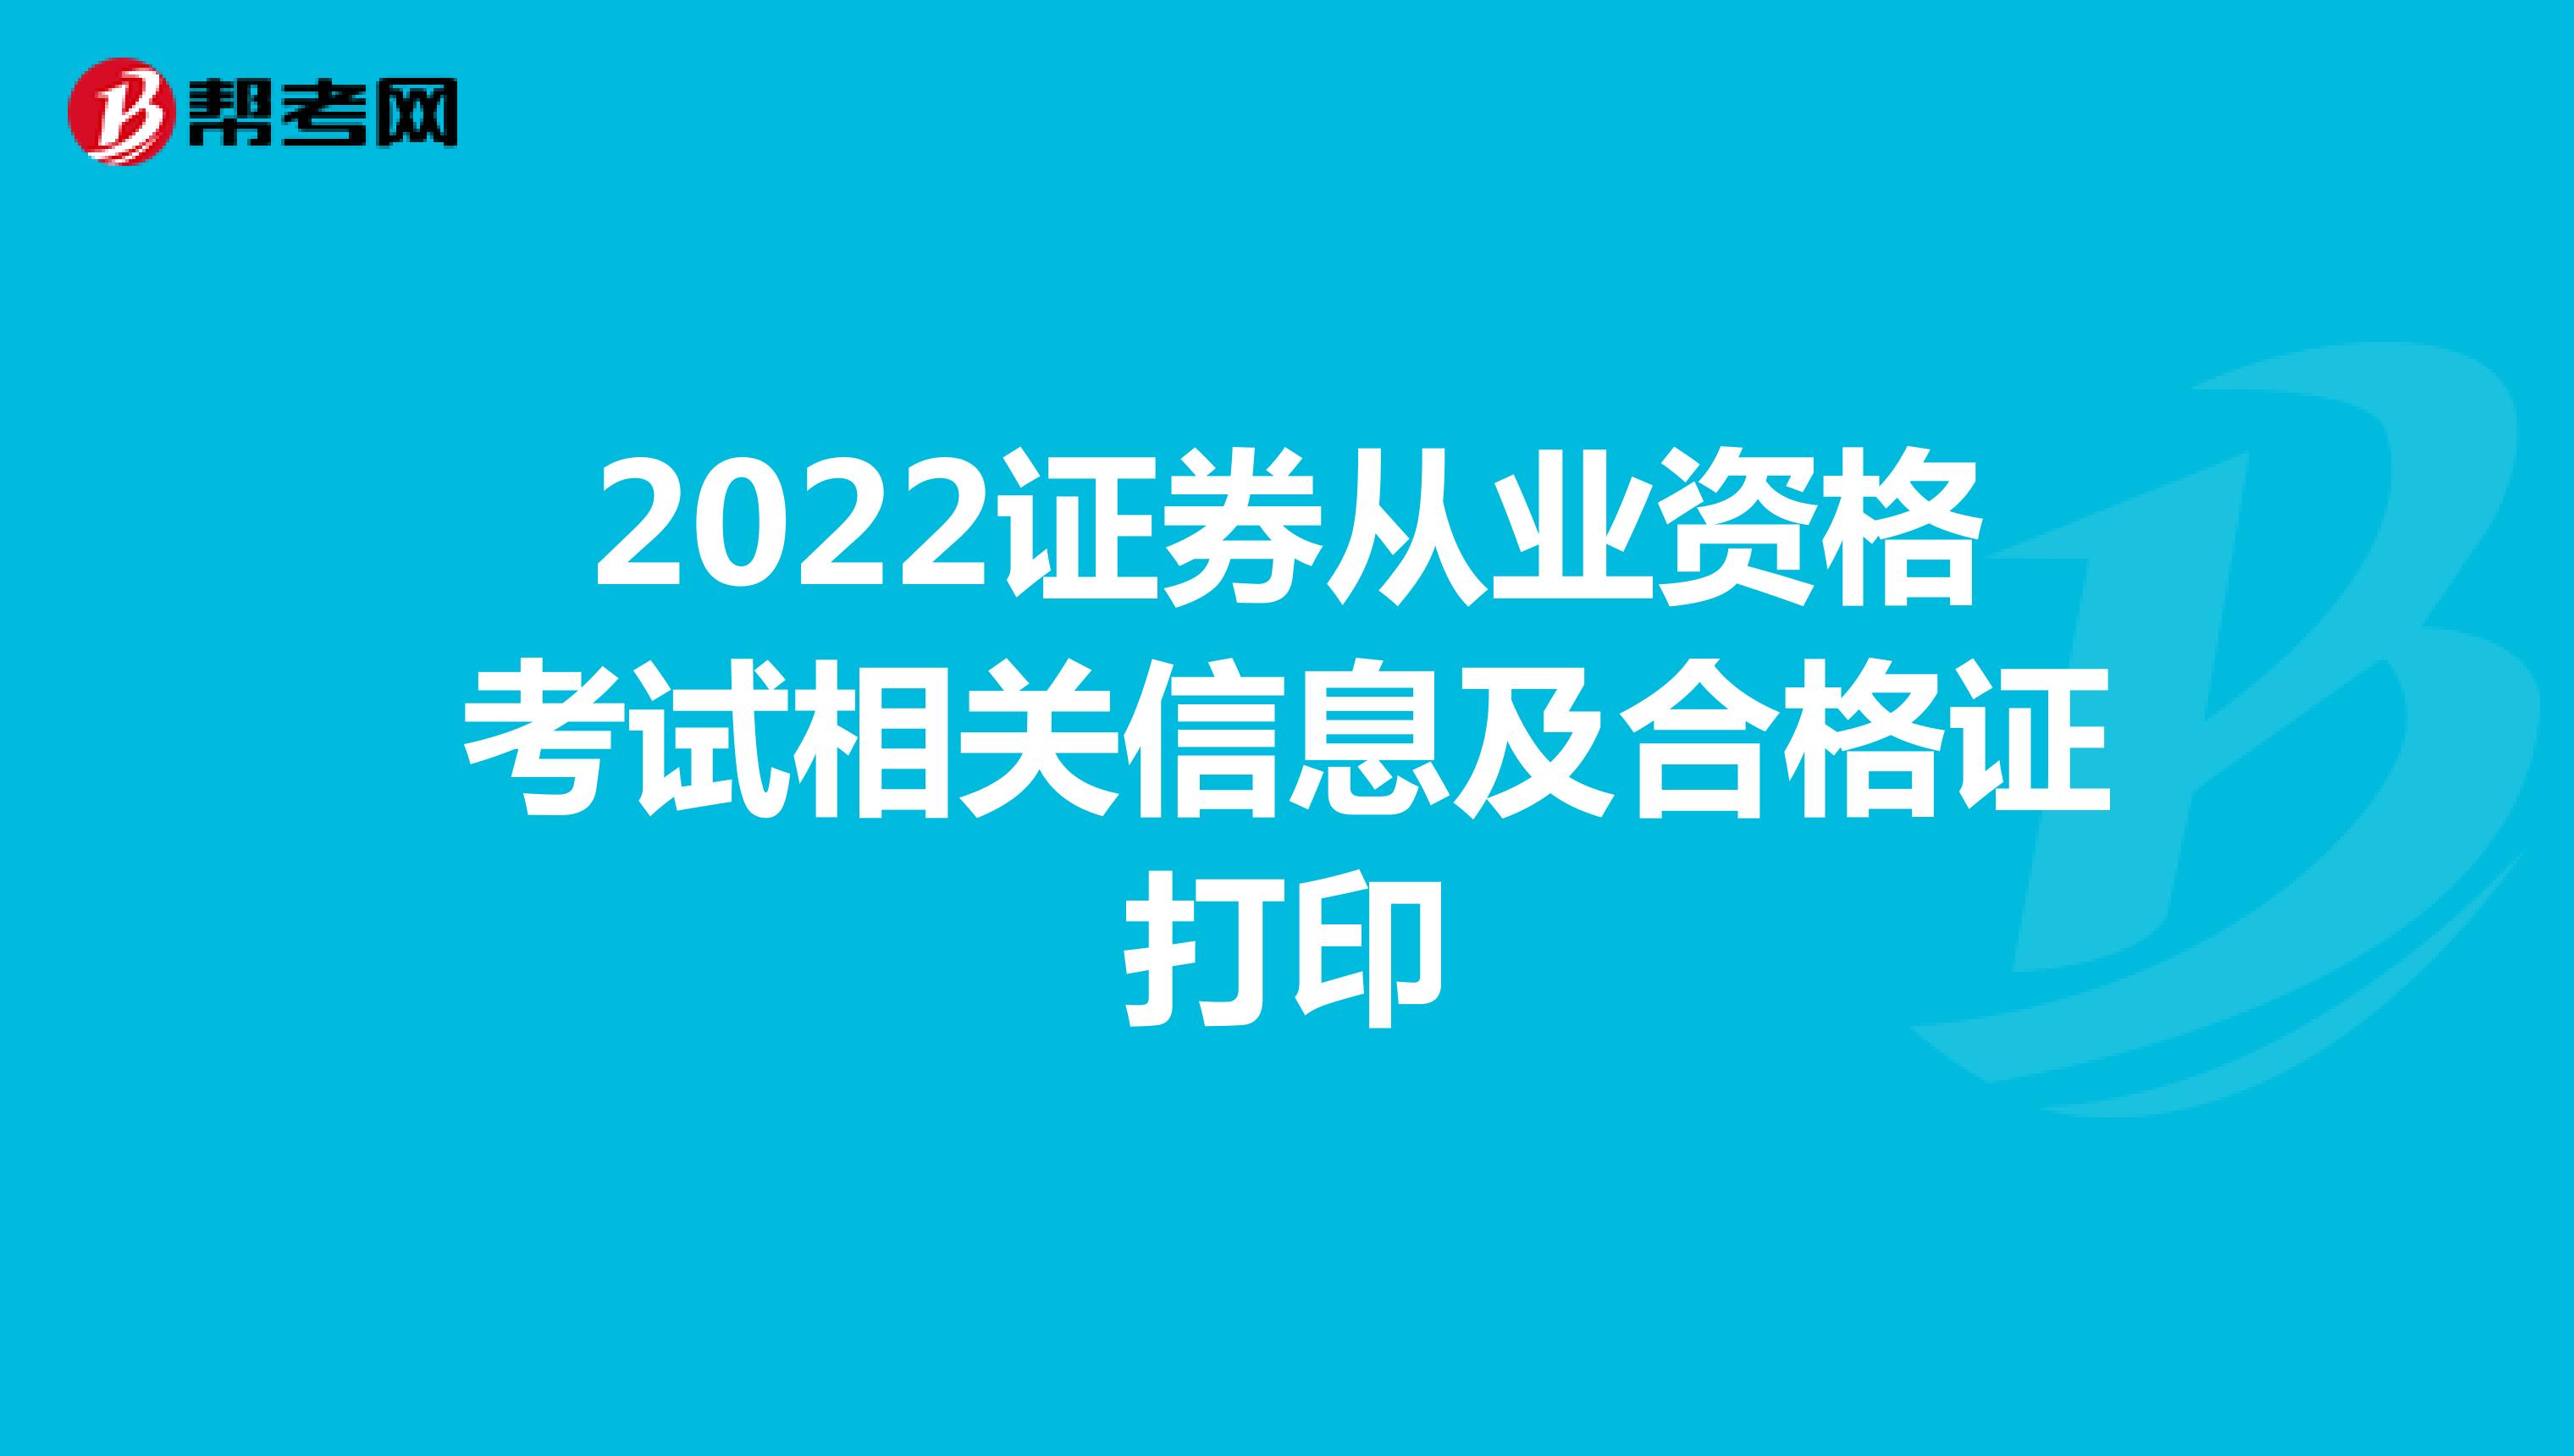 2022证券从业资格考试相关信息及合格证打印